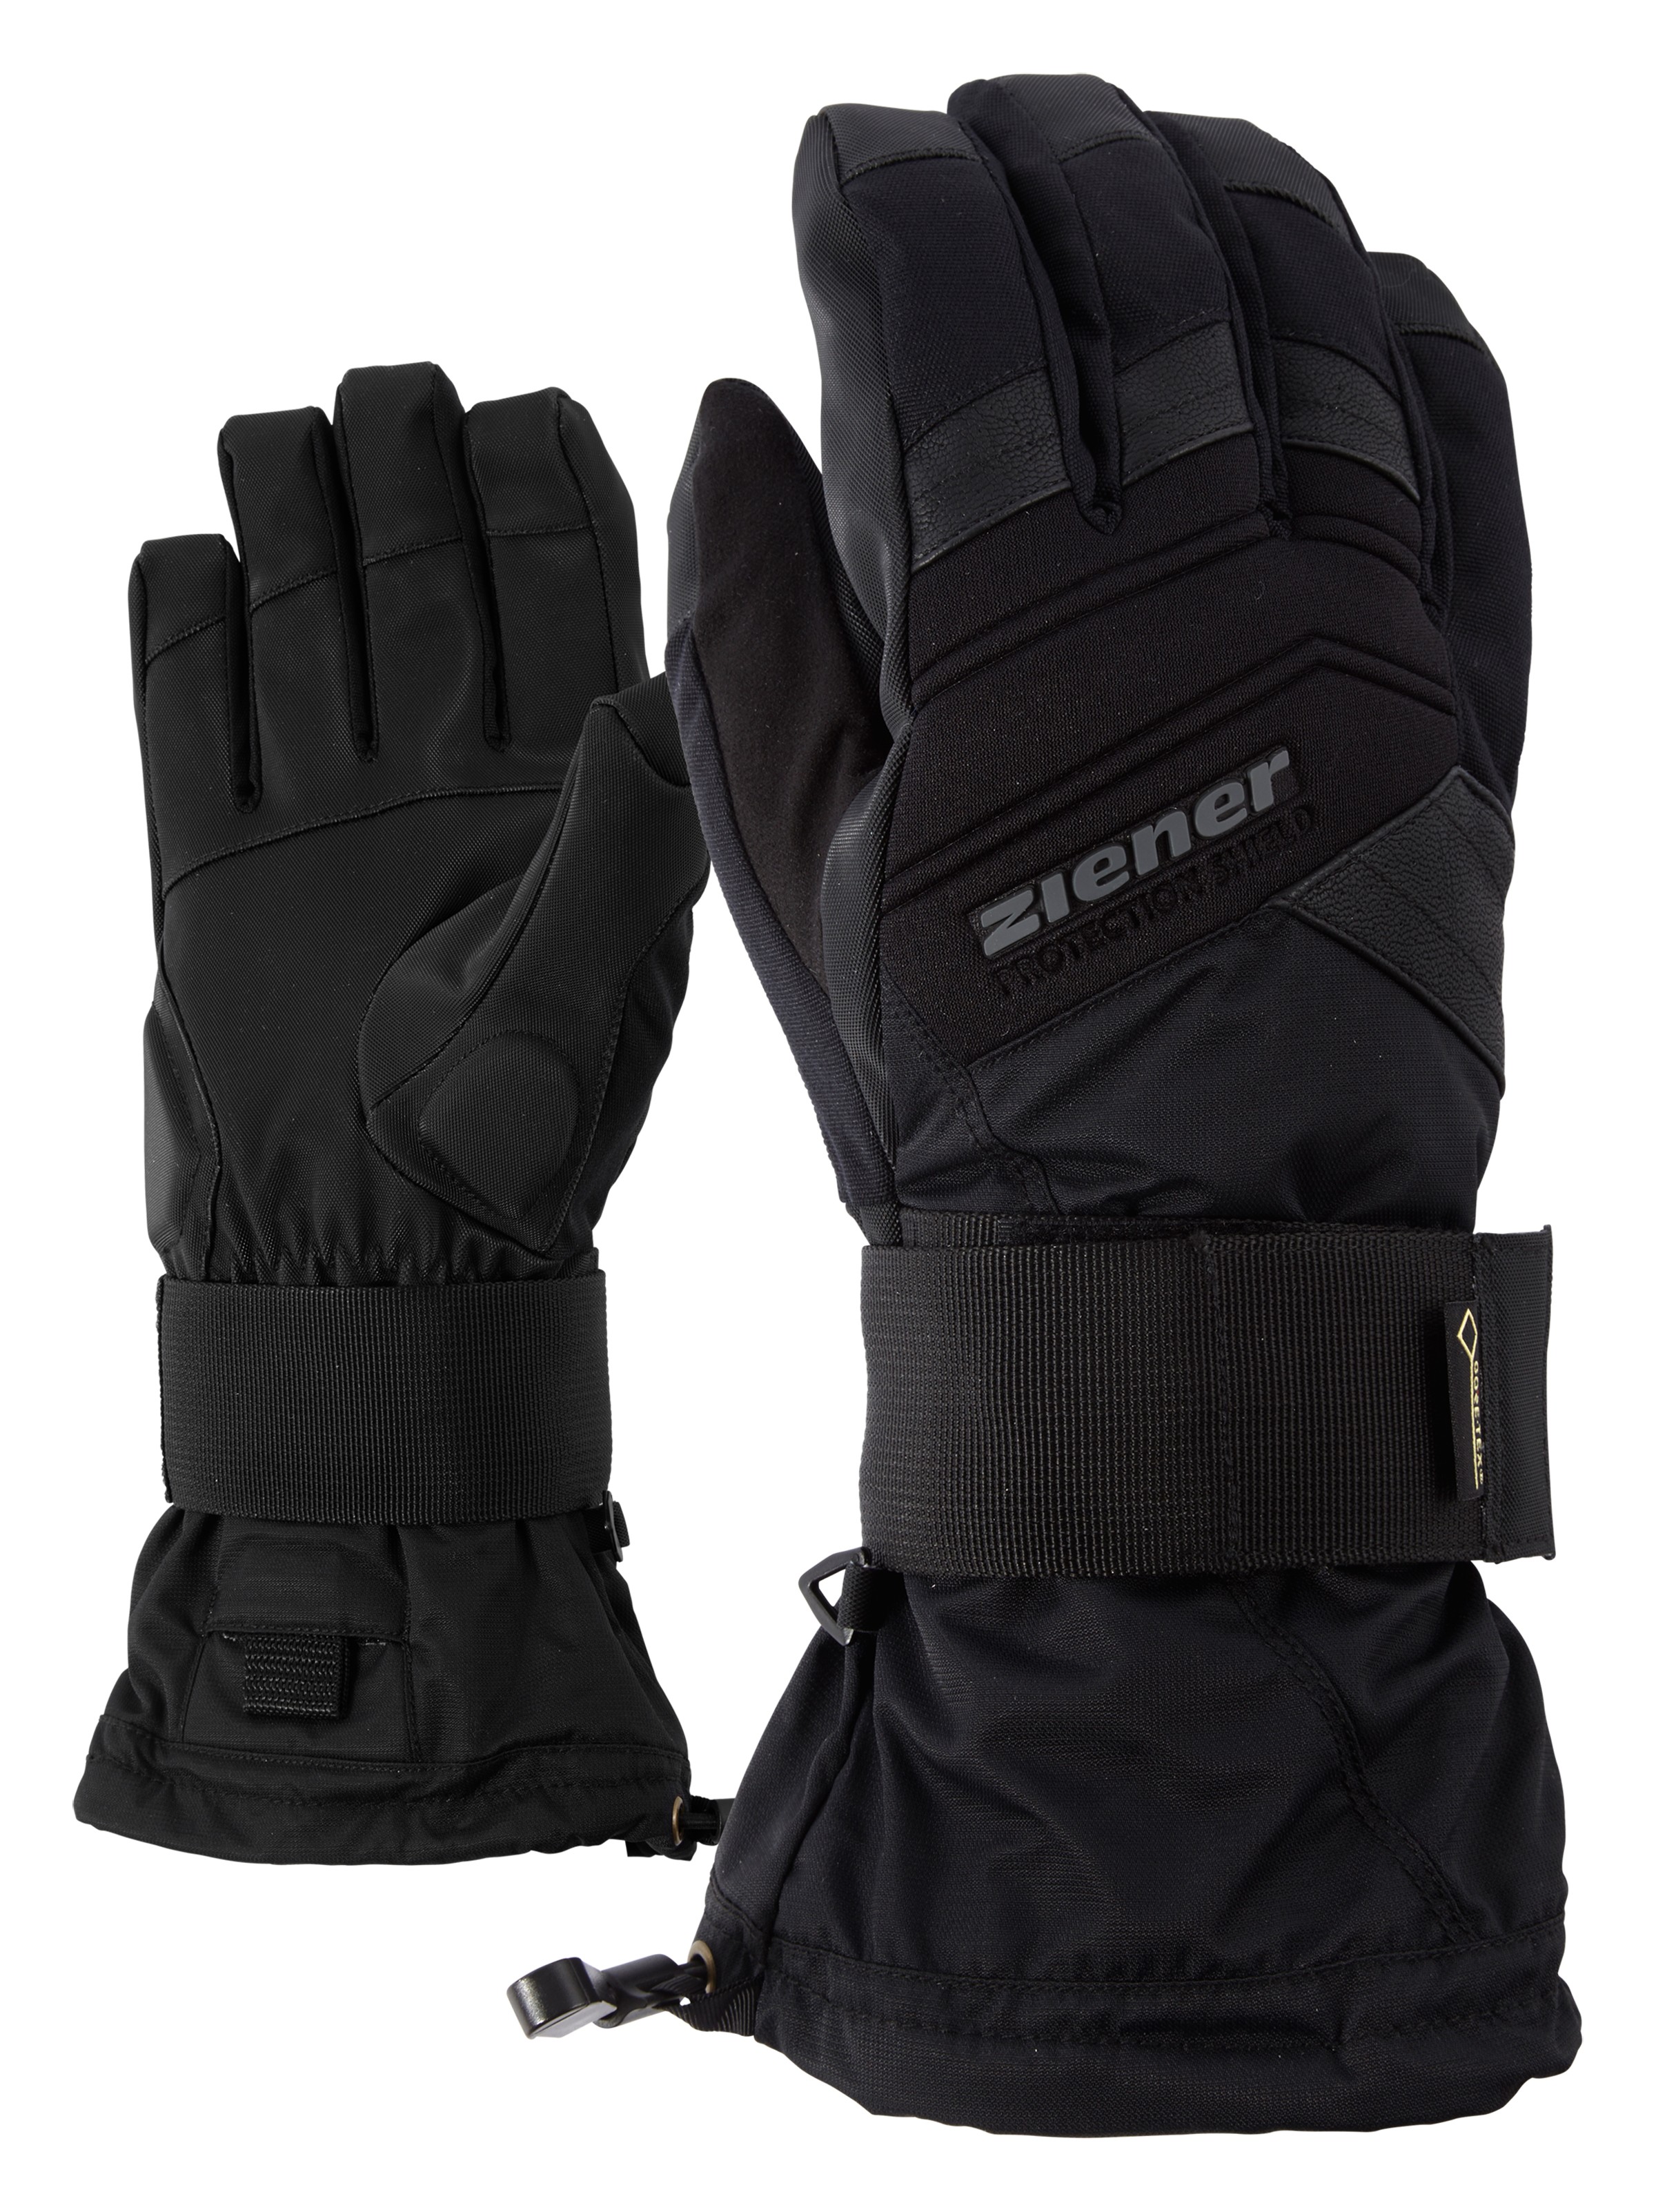 Ziener Medical GTX(R) Glove -black